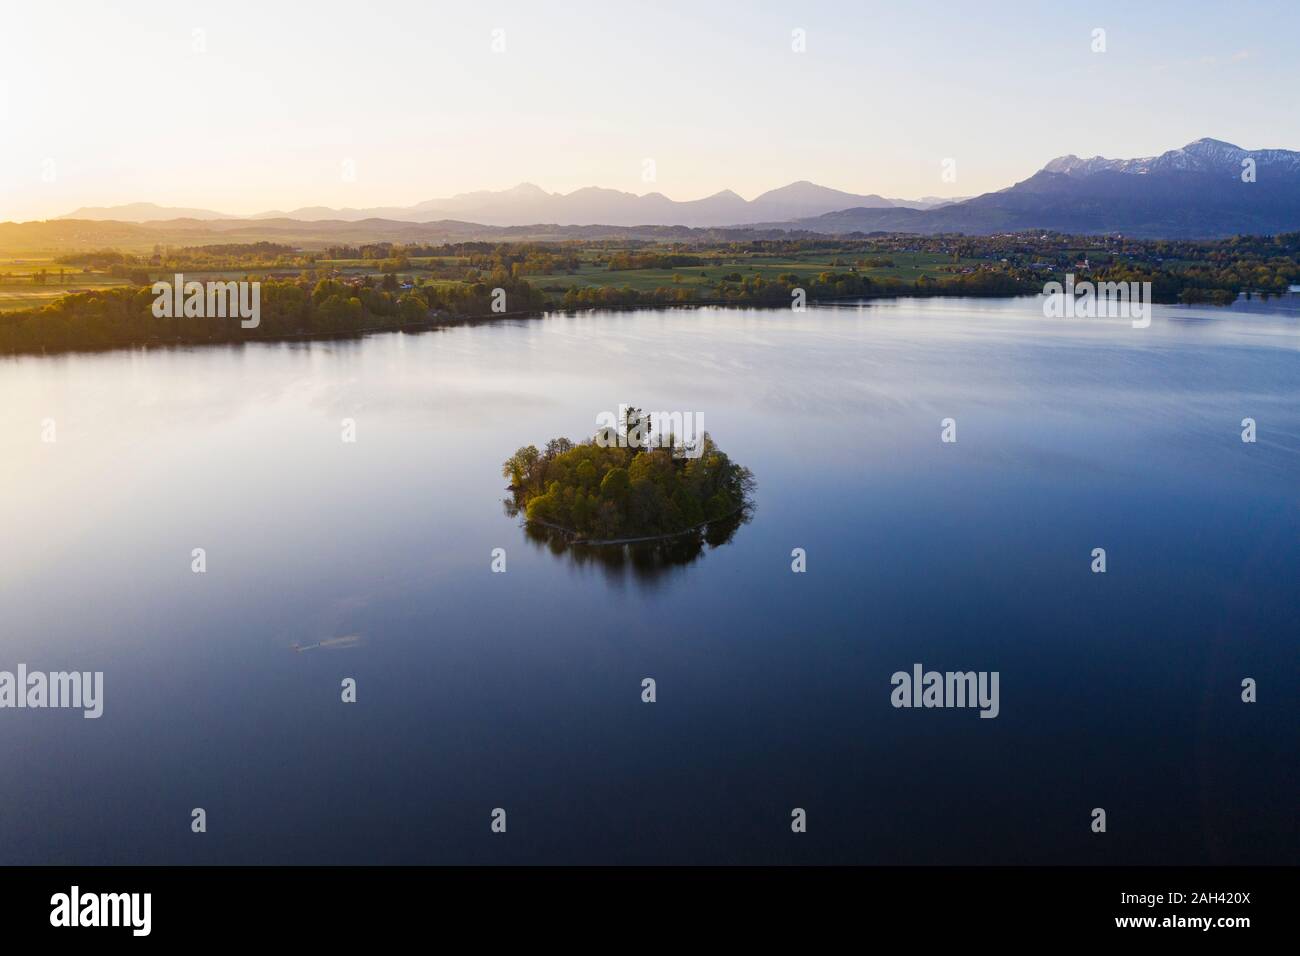 Alemania, Baviera, vista aérea de Muhlworth islote en el lago Staffelsee al amanecer Foto de stock